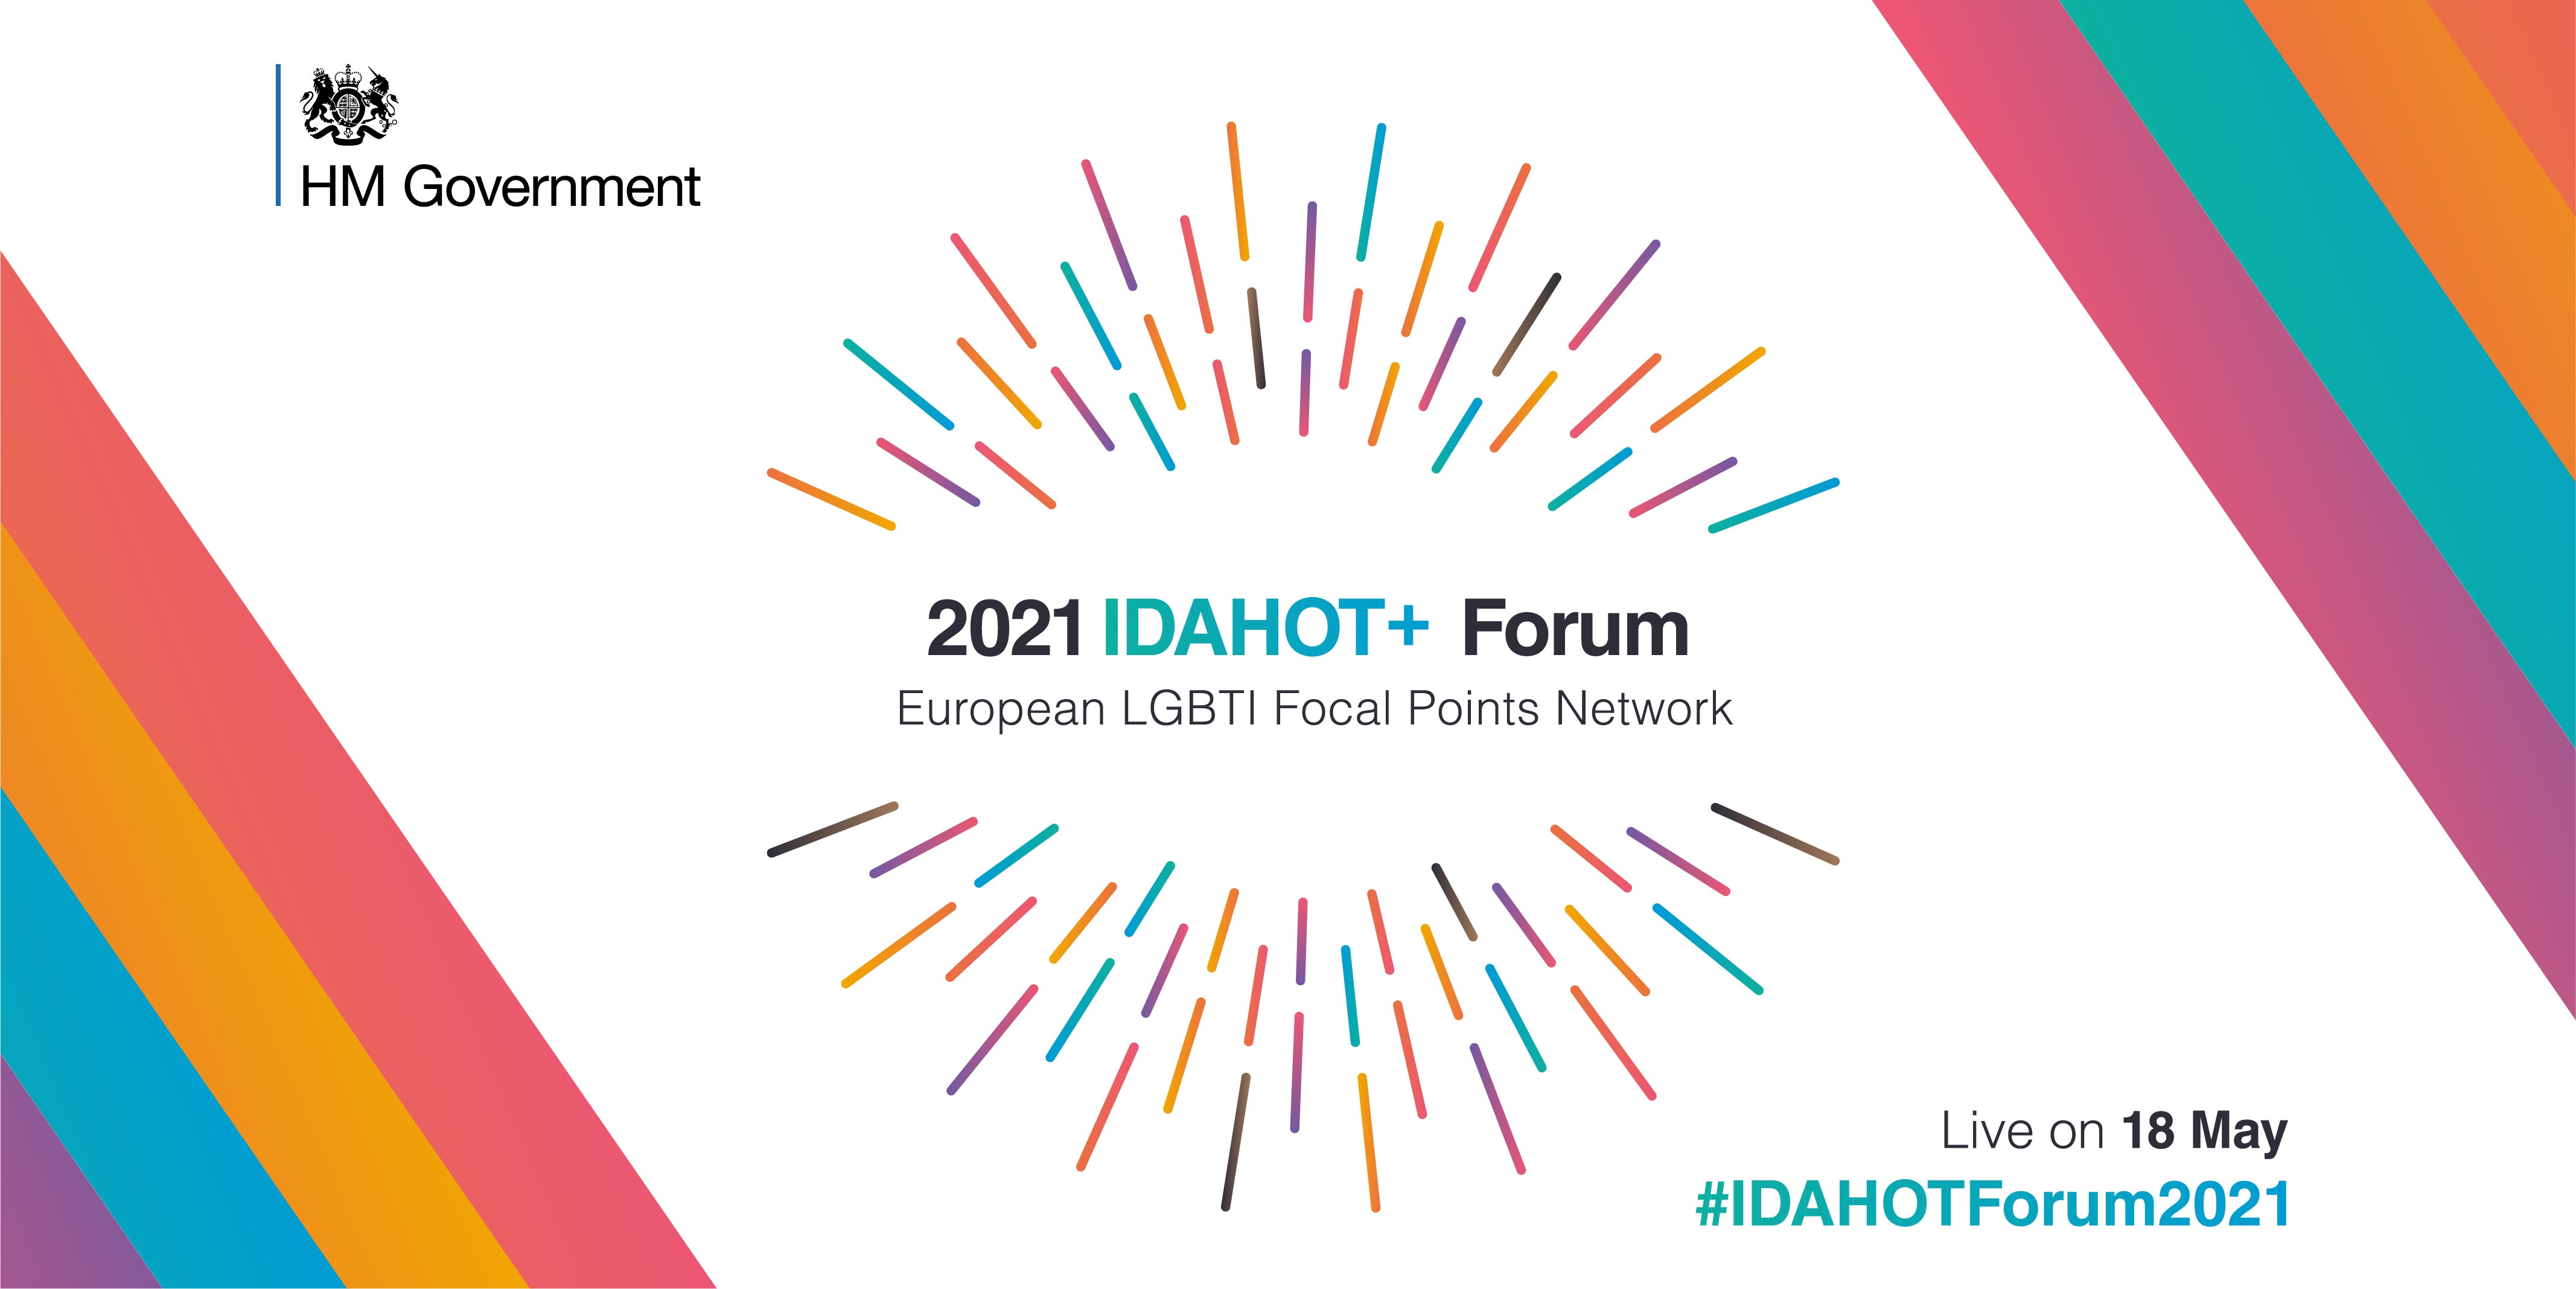 2021 European IDAHOT+ Forum